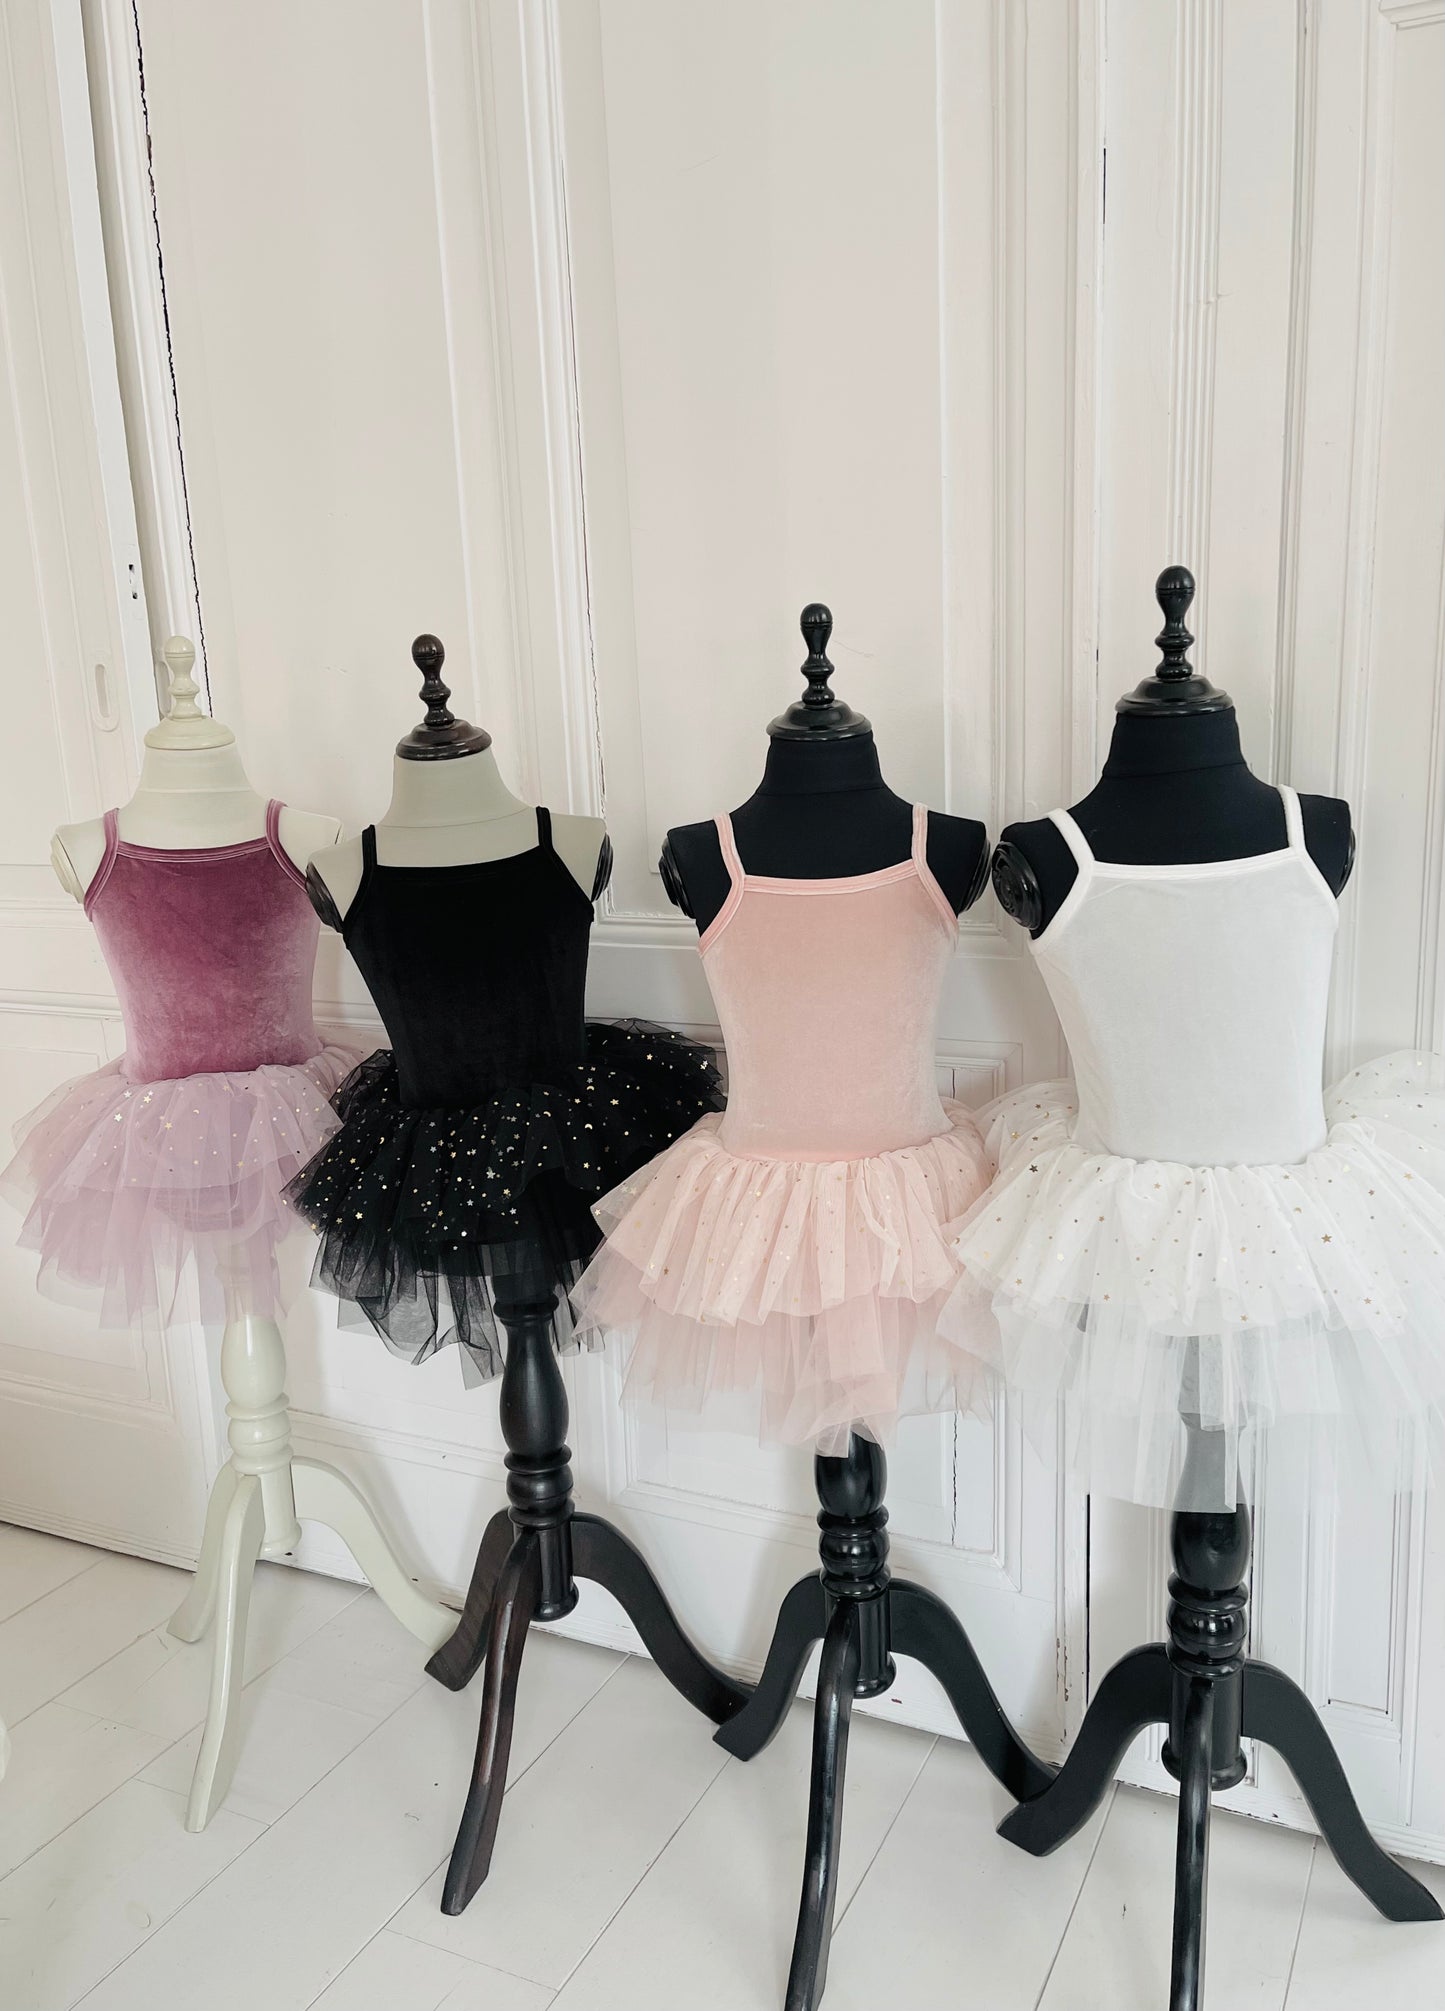 DOLLY® VELVET LEOTARD ROMPER TUTU DRESS STARS & MOON ⭐️ 🌙 TULLE ballet pink